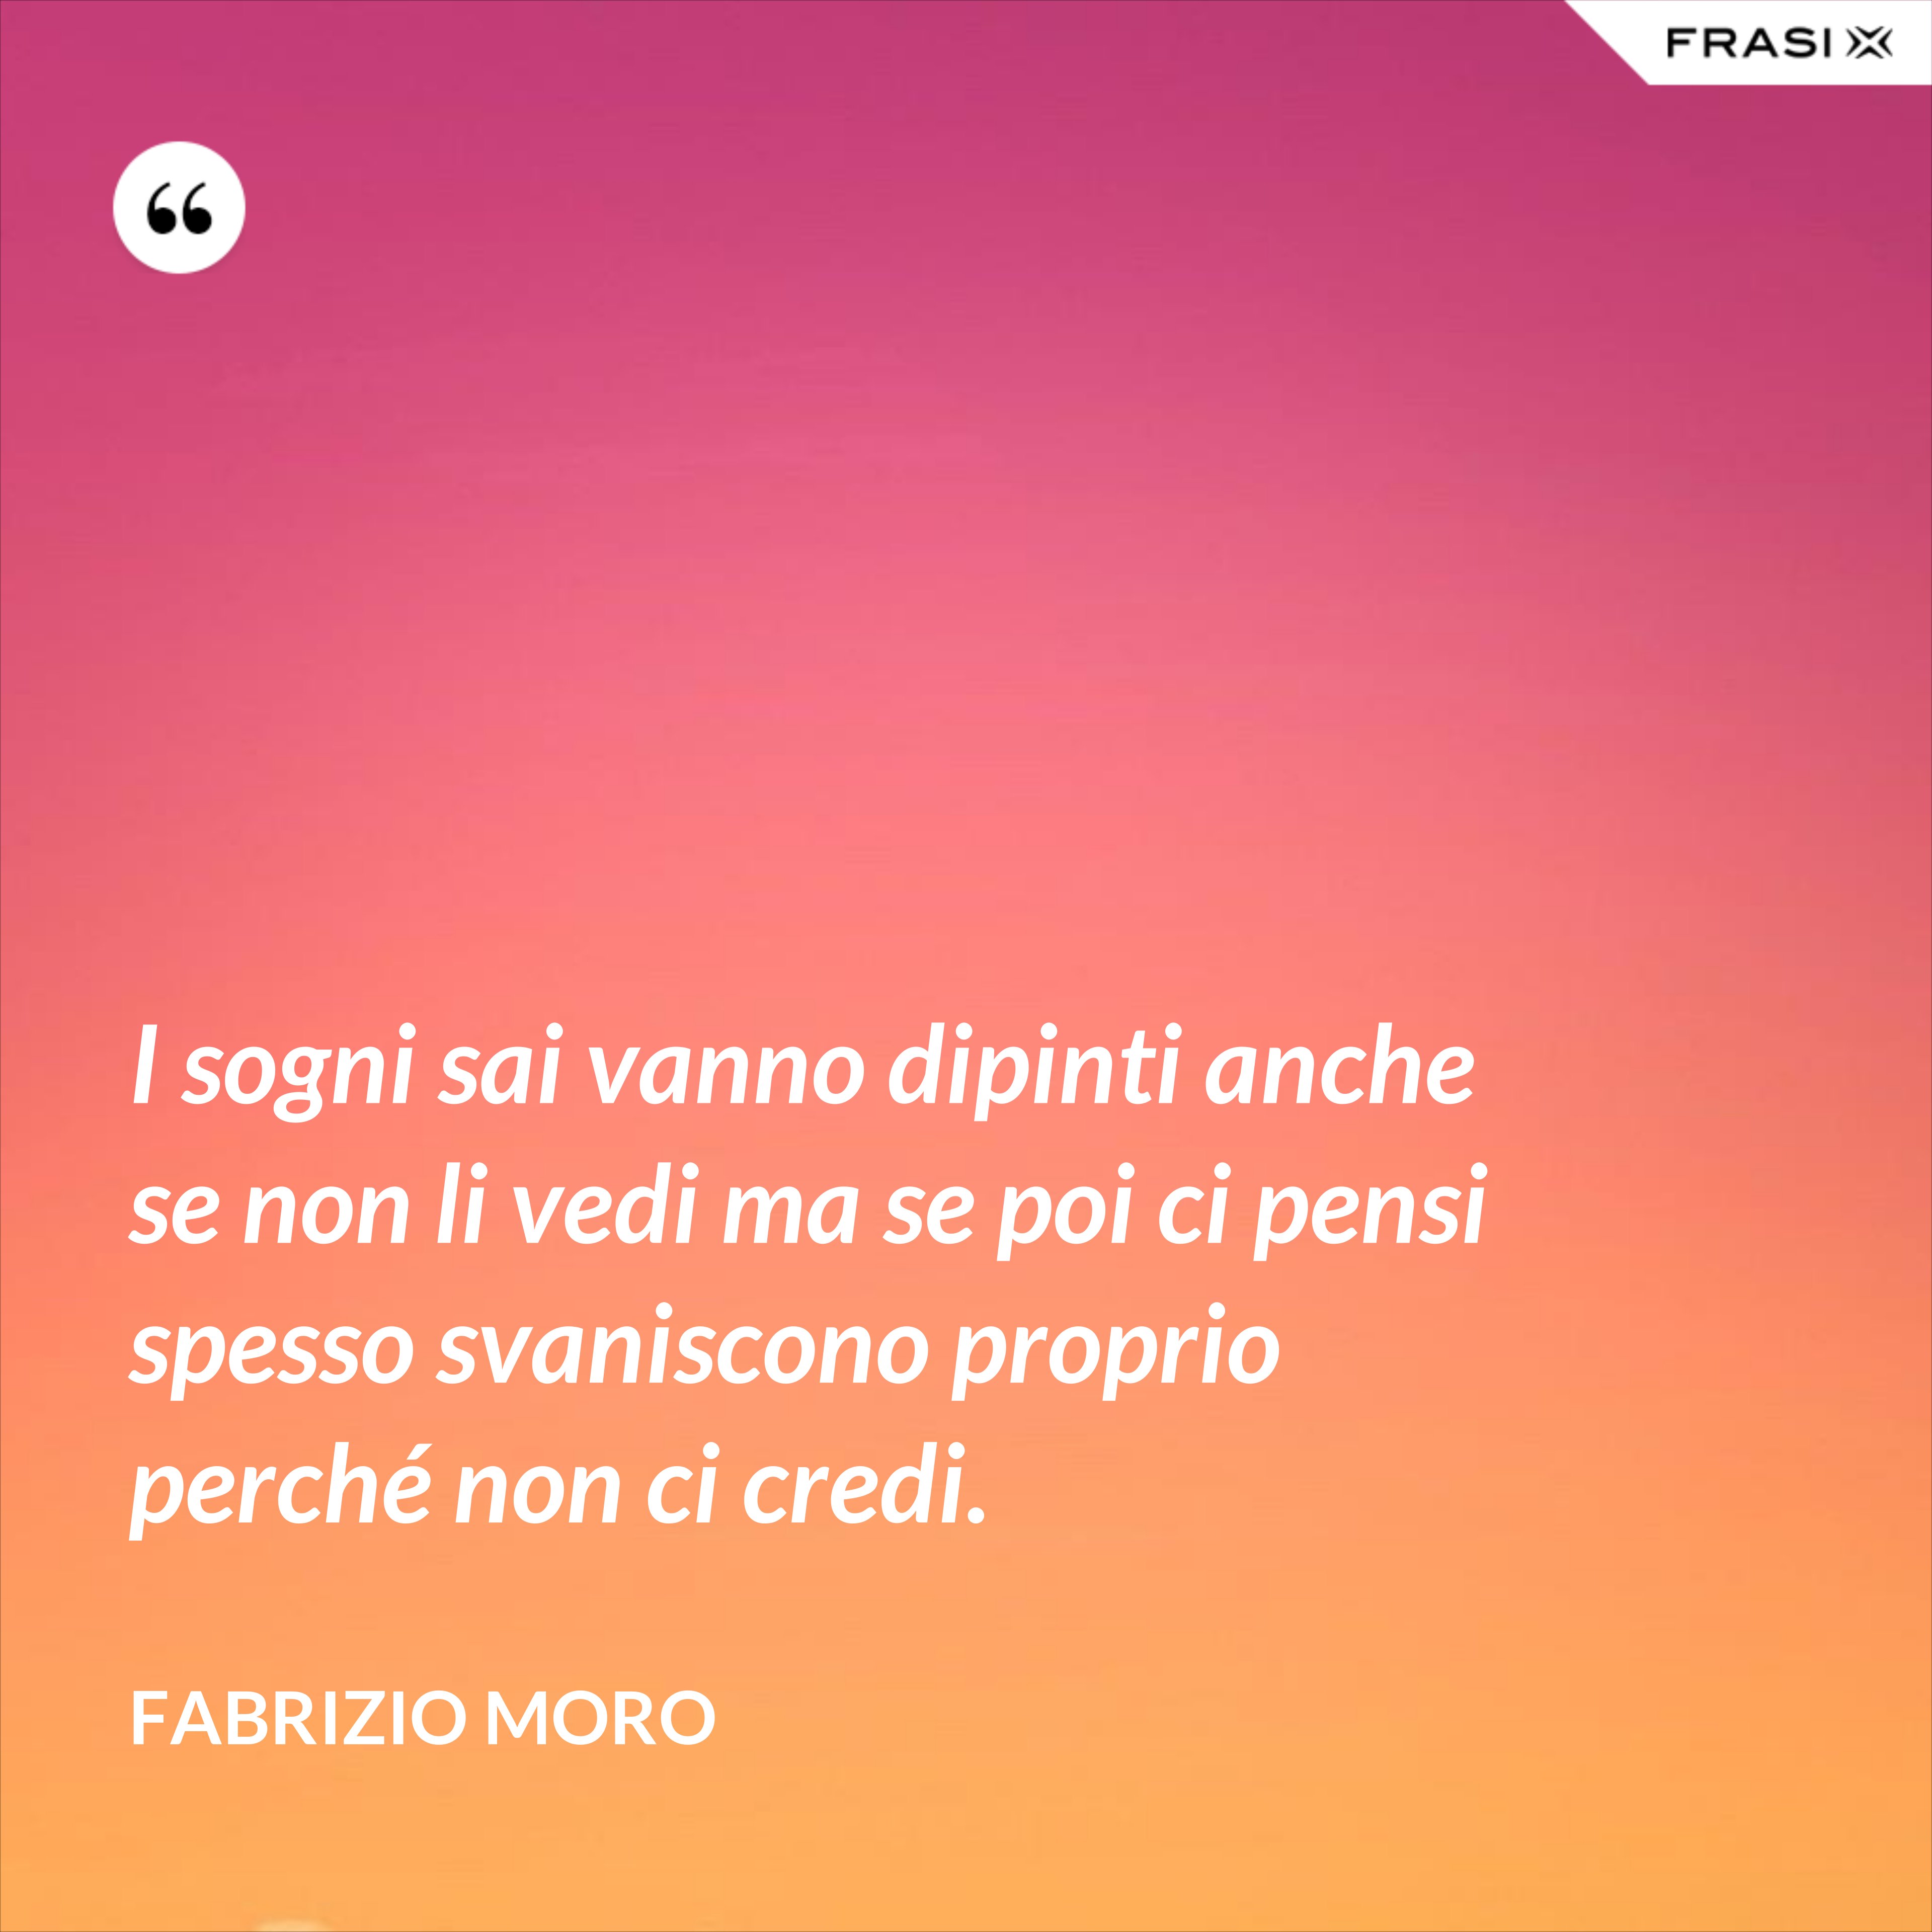 I sogni sai vanno dipinti anche se non li vedi ma se poi ci pensi spesso svaniscono proprio perché non ci credi. - Fabrizio Moro